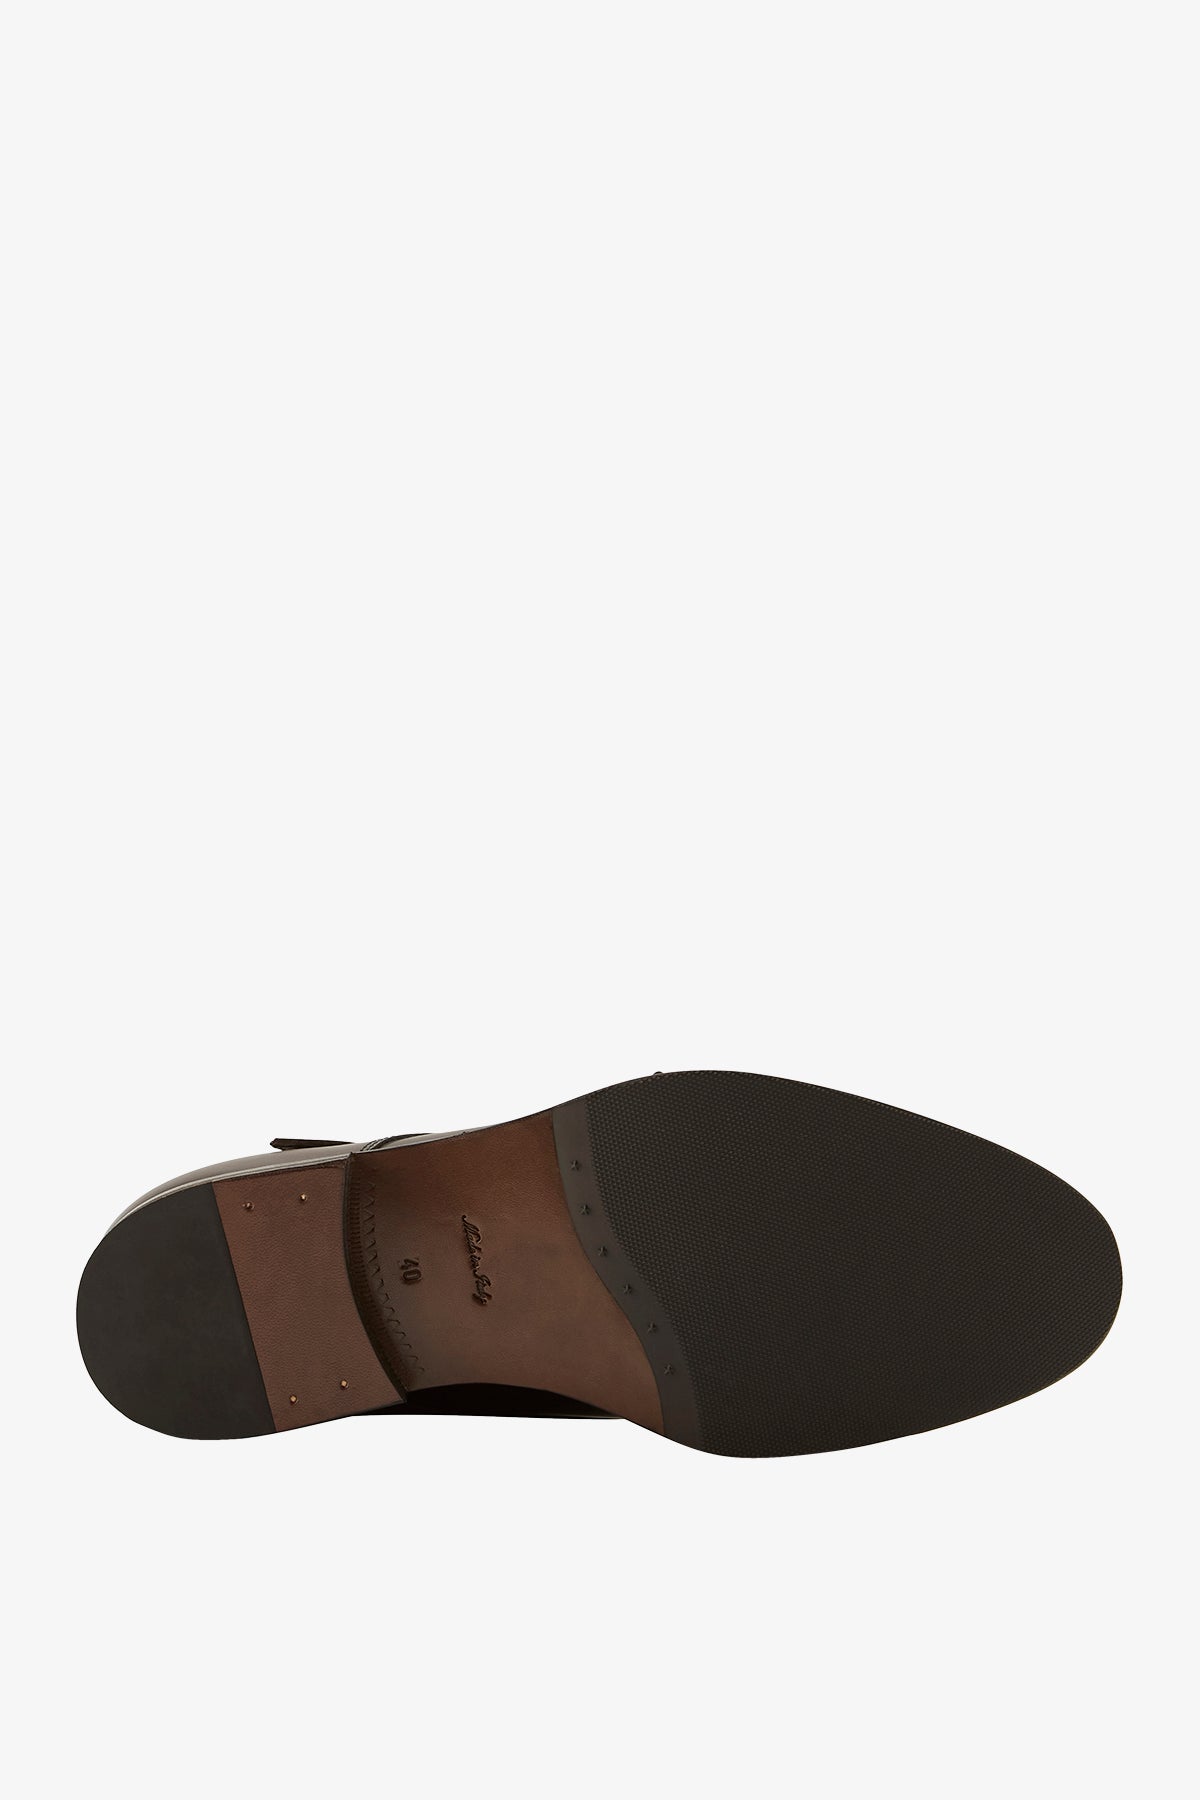 Double Monk - Dark Brown Shoe